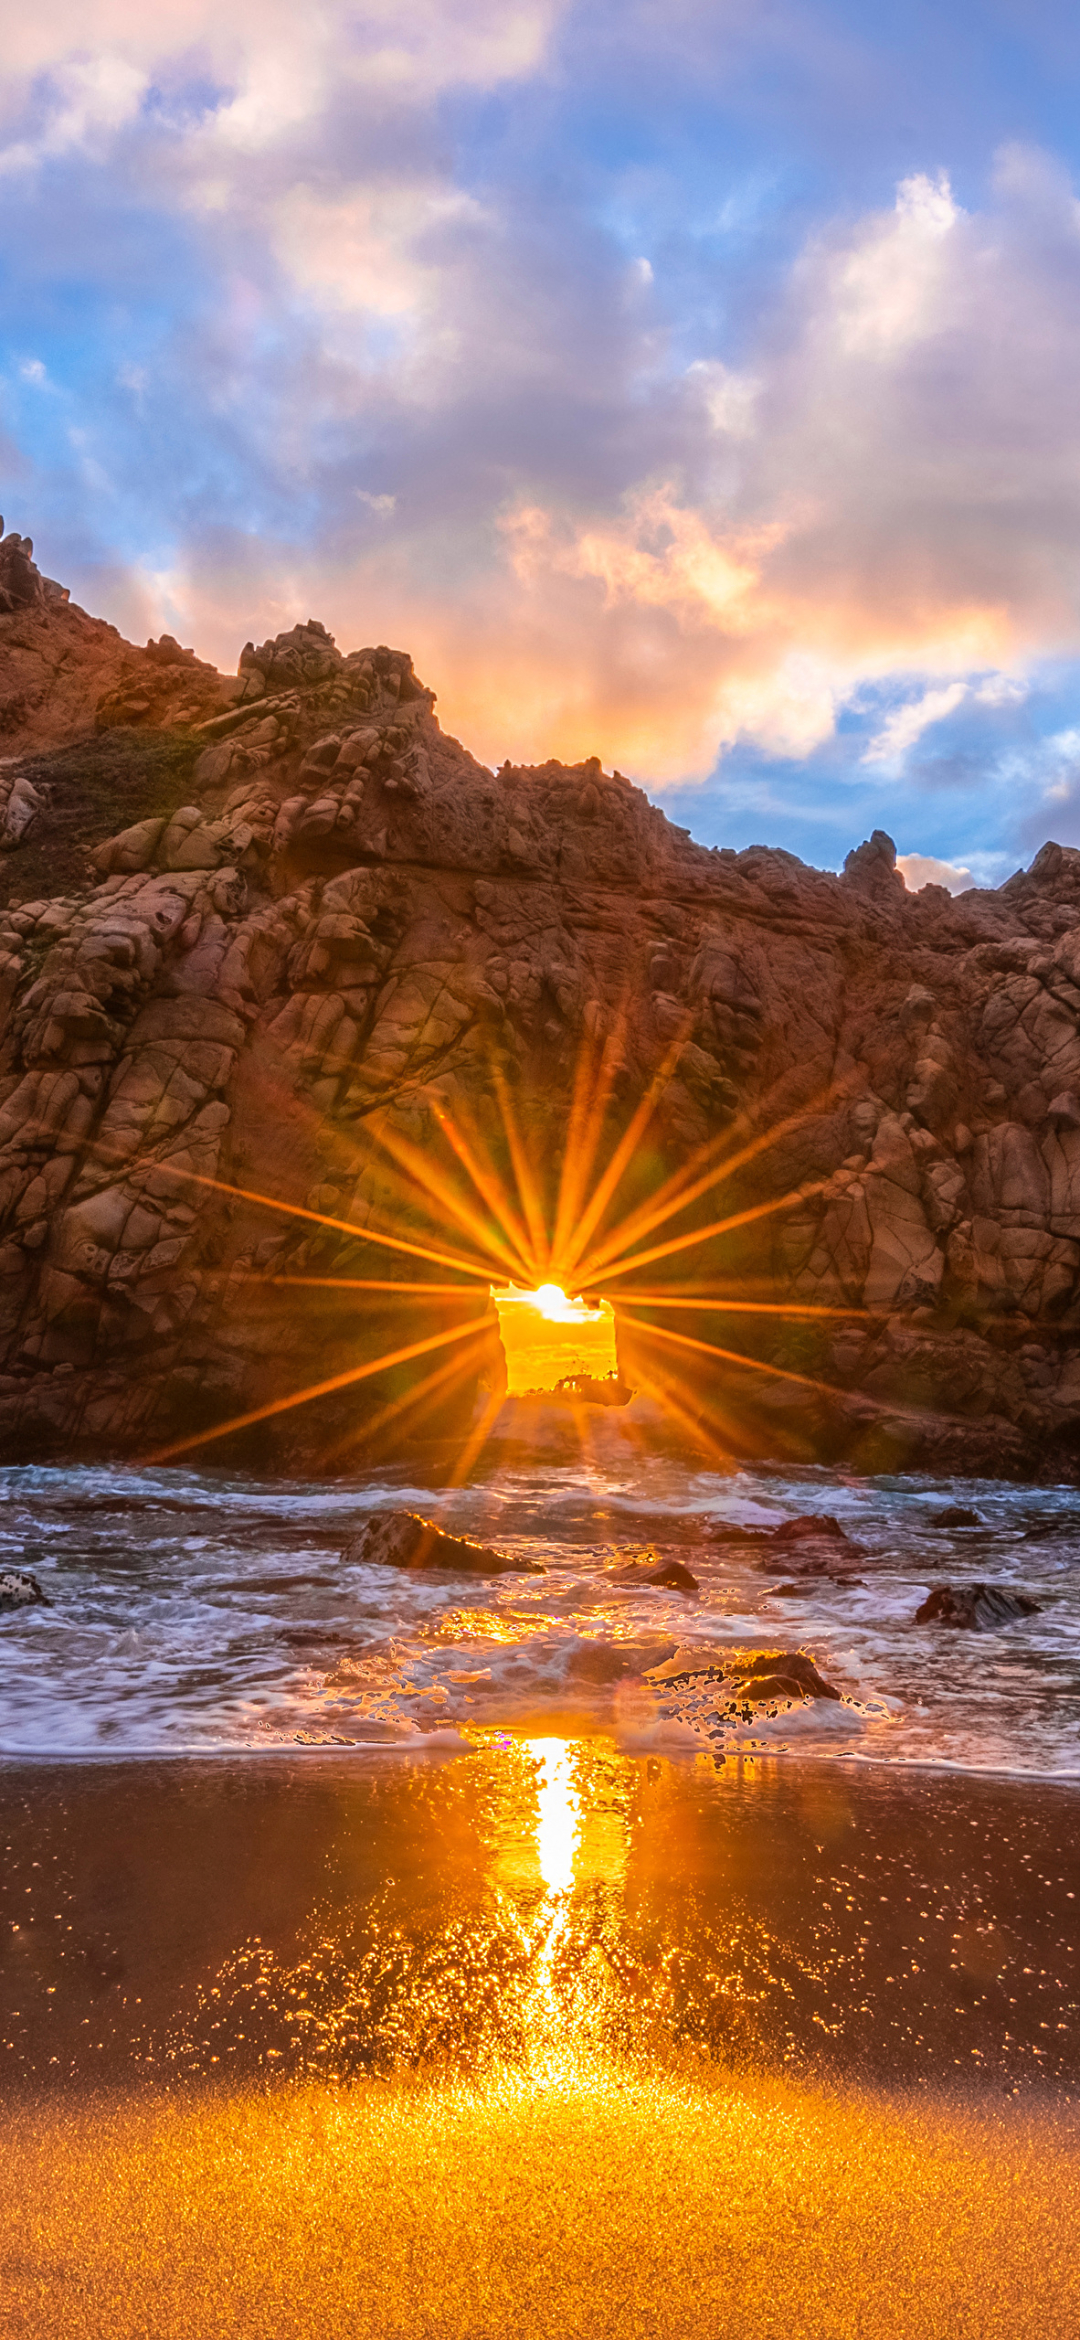 Rays of light through an arch on the beach